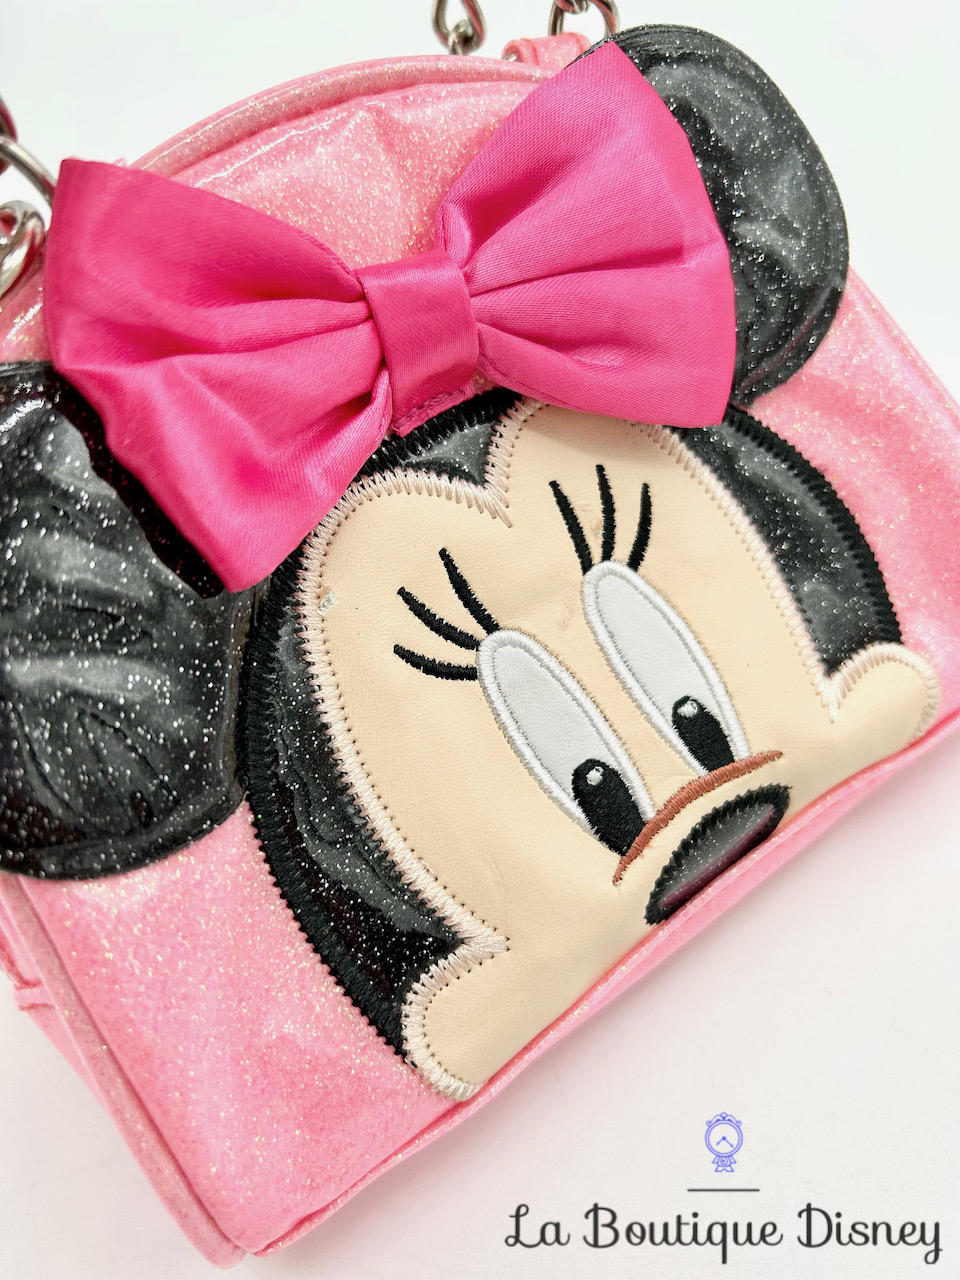 Sac à main Minnie Mouse Disney Store rose paillettes